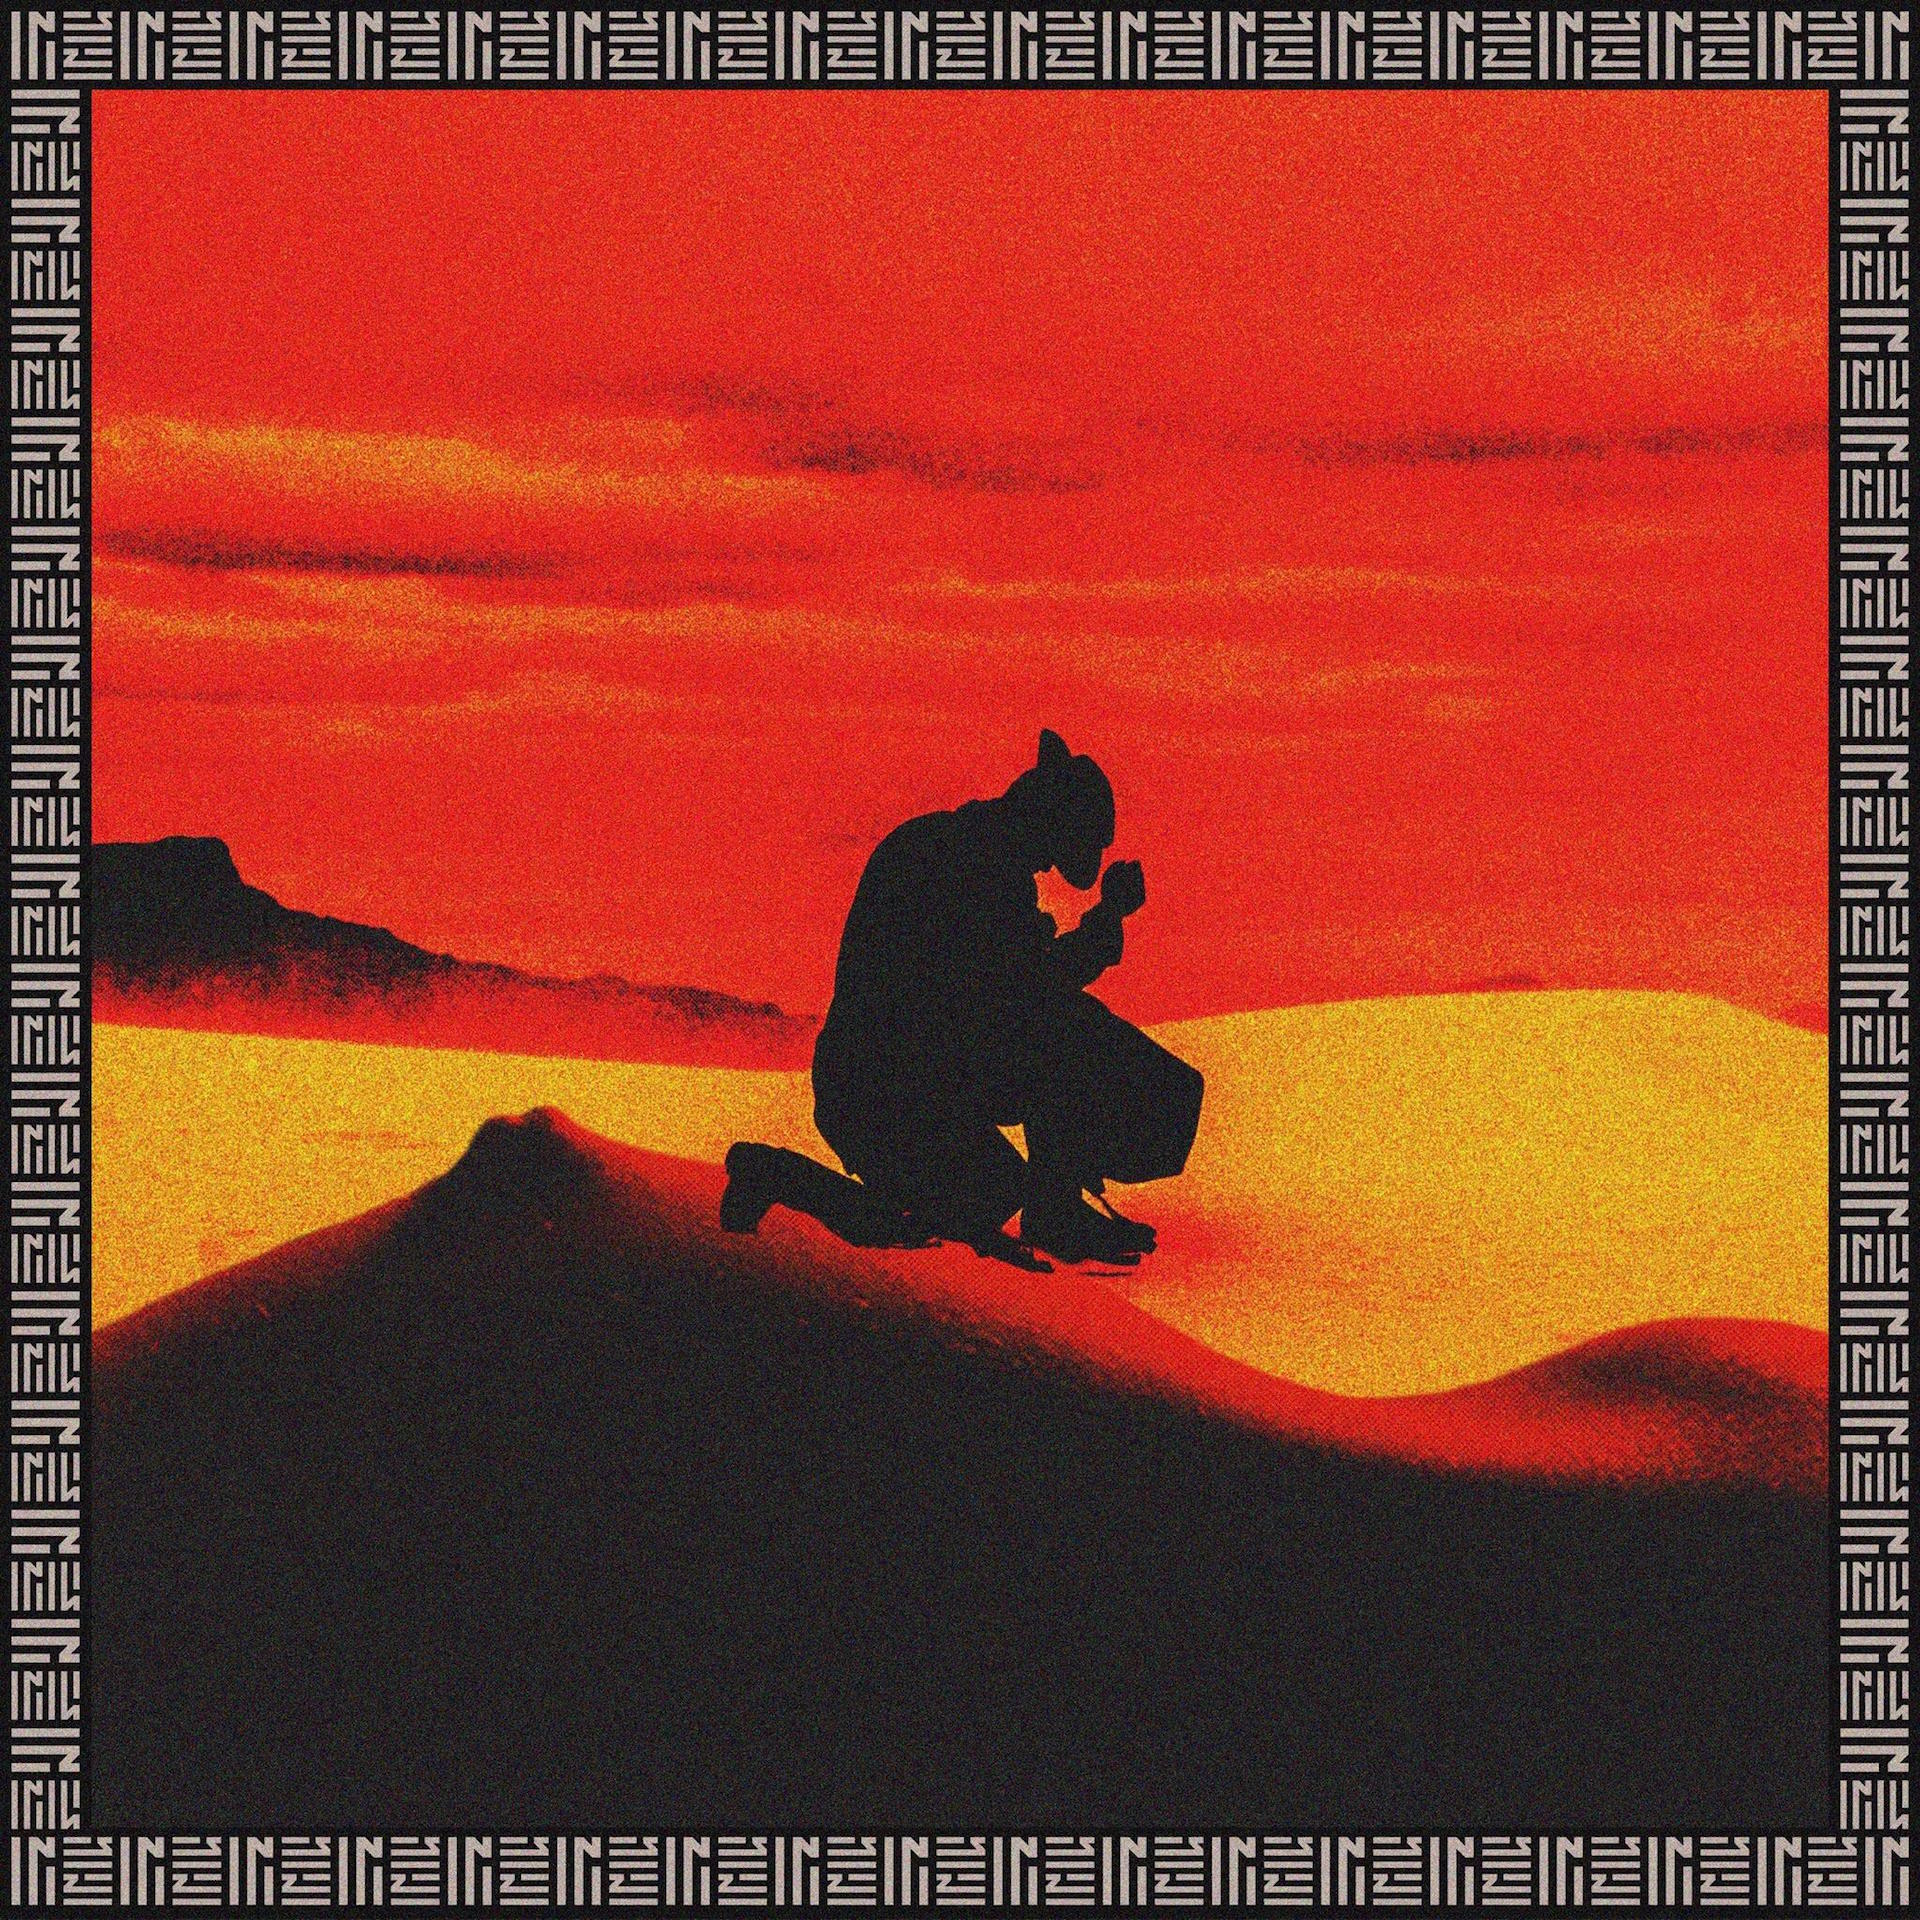 Zhu-ringos-desert-album-review.jpg